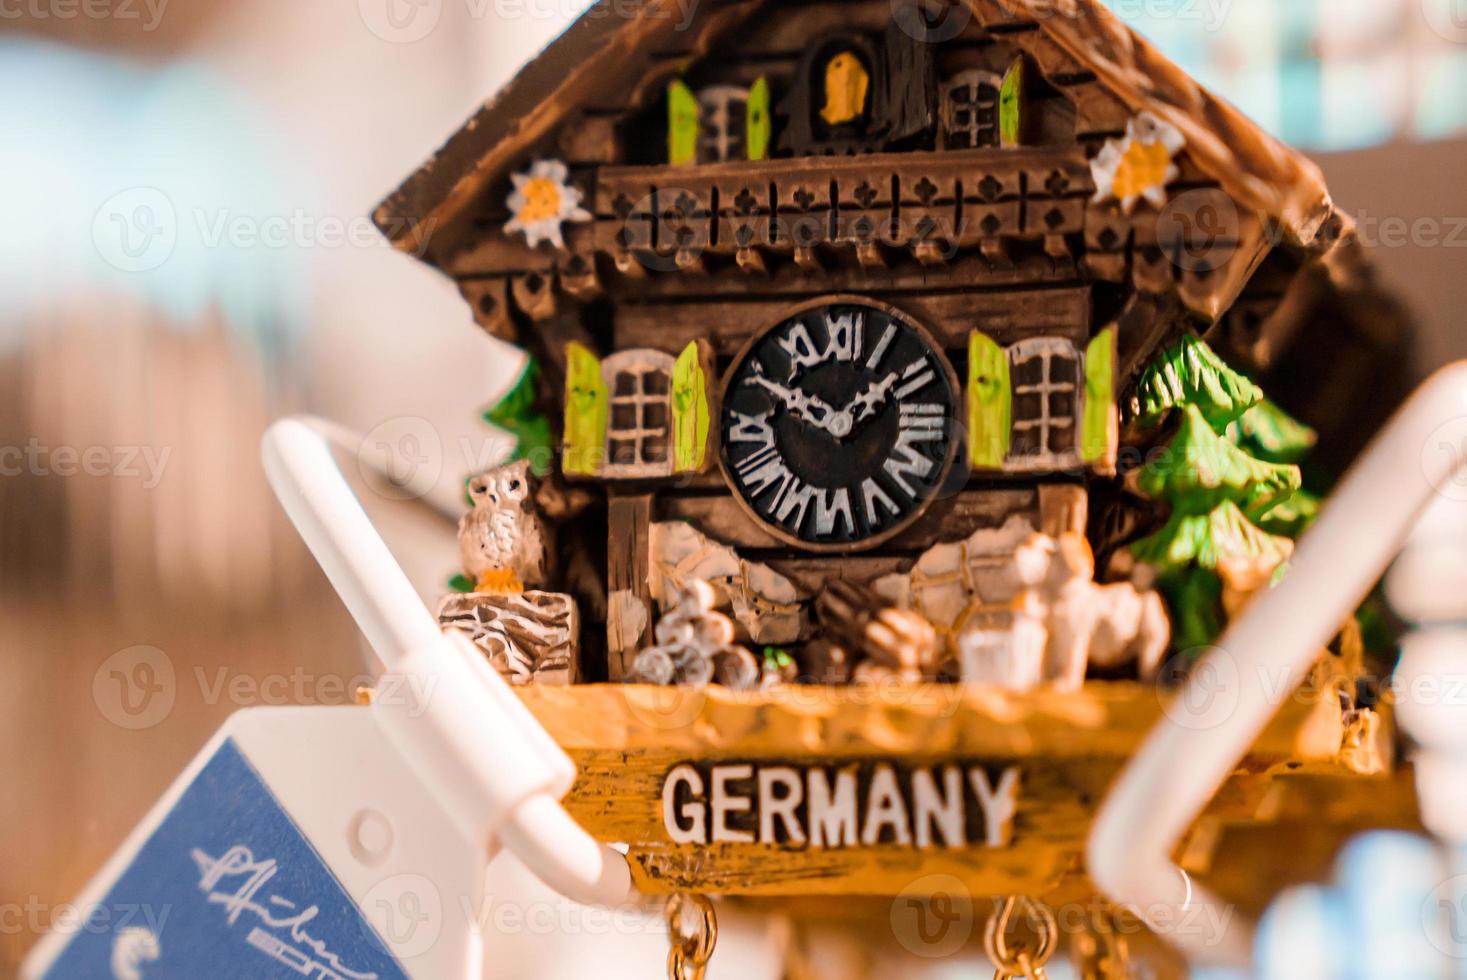 Alemania recuerdo refrigerador imán. refrigerador imanes son popular recuerdo y coleccionable objetos. tradicional alemán reloj con país título. foto